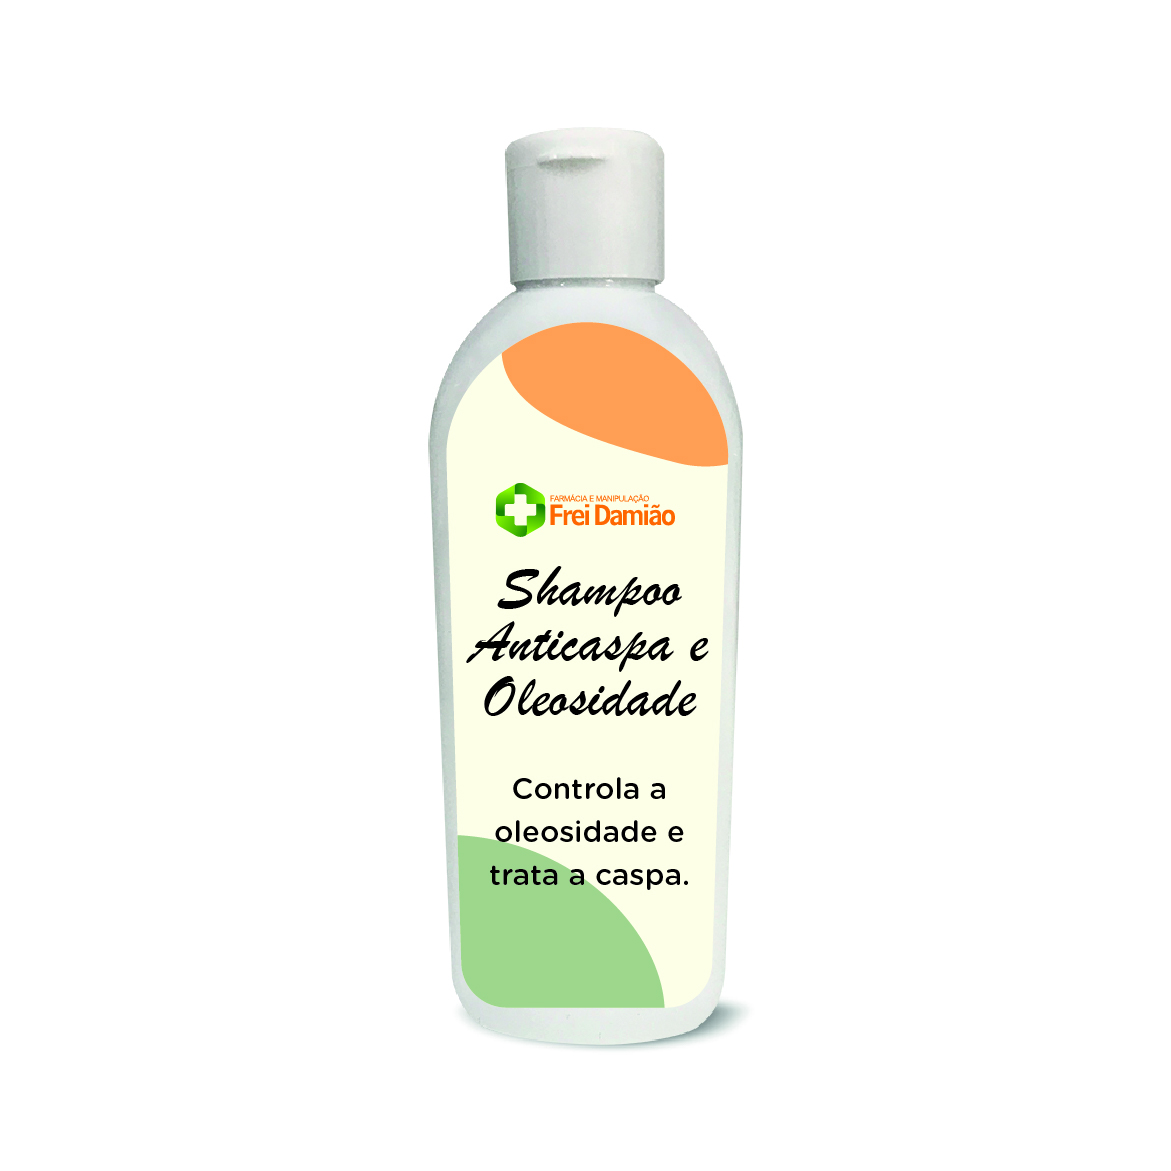 Shampoo anticaspa e oleosidade